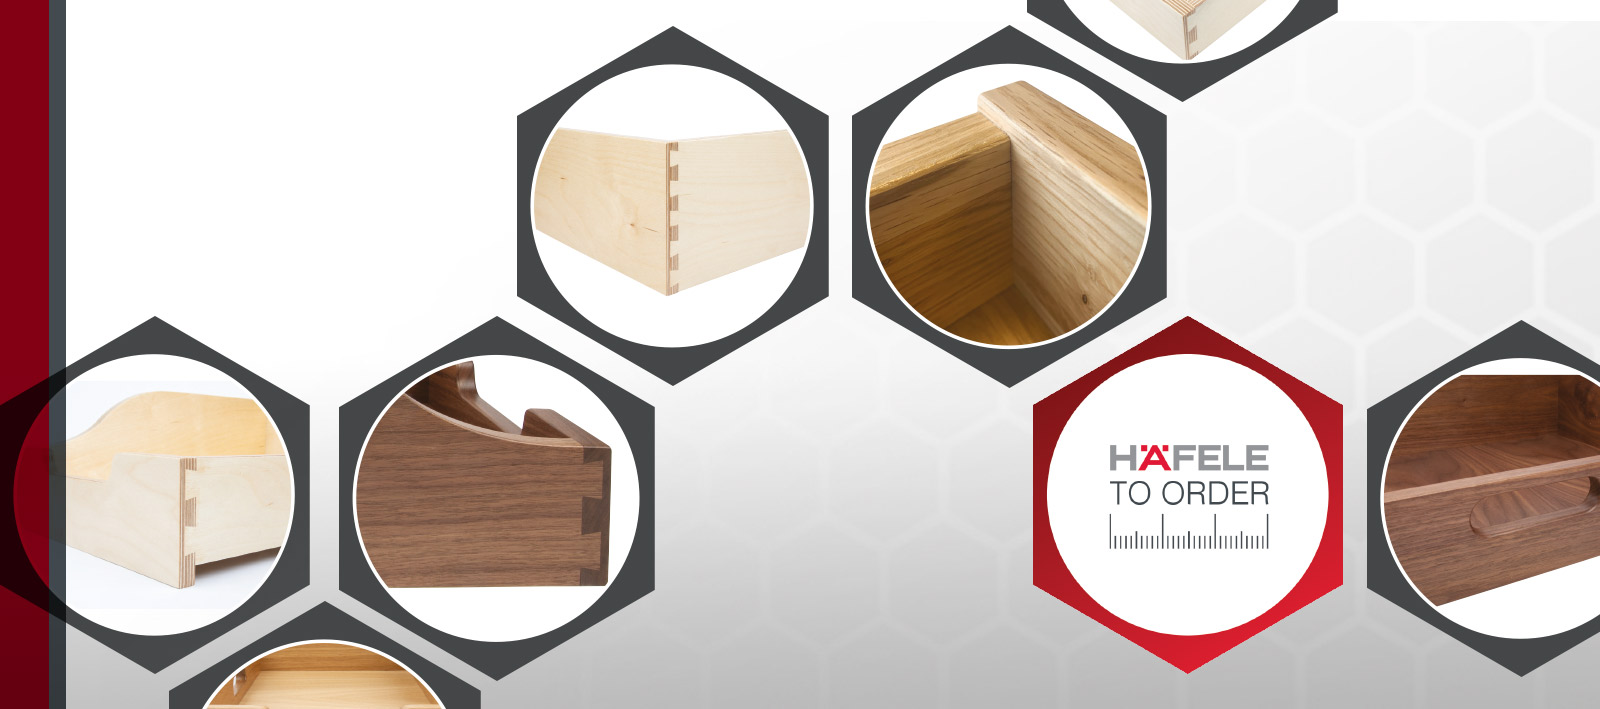 Hafele to order - Bespoke Timber Drawers